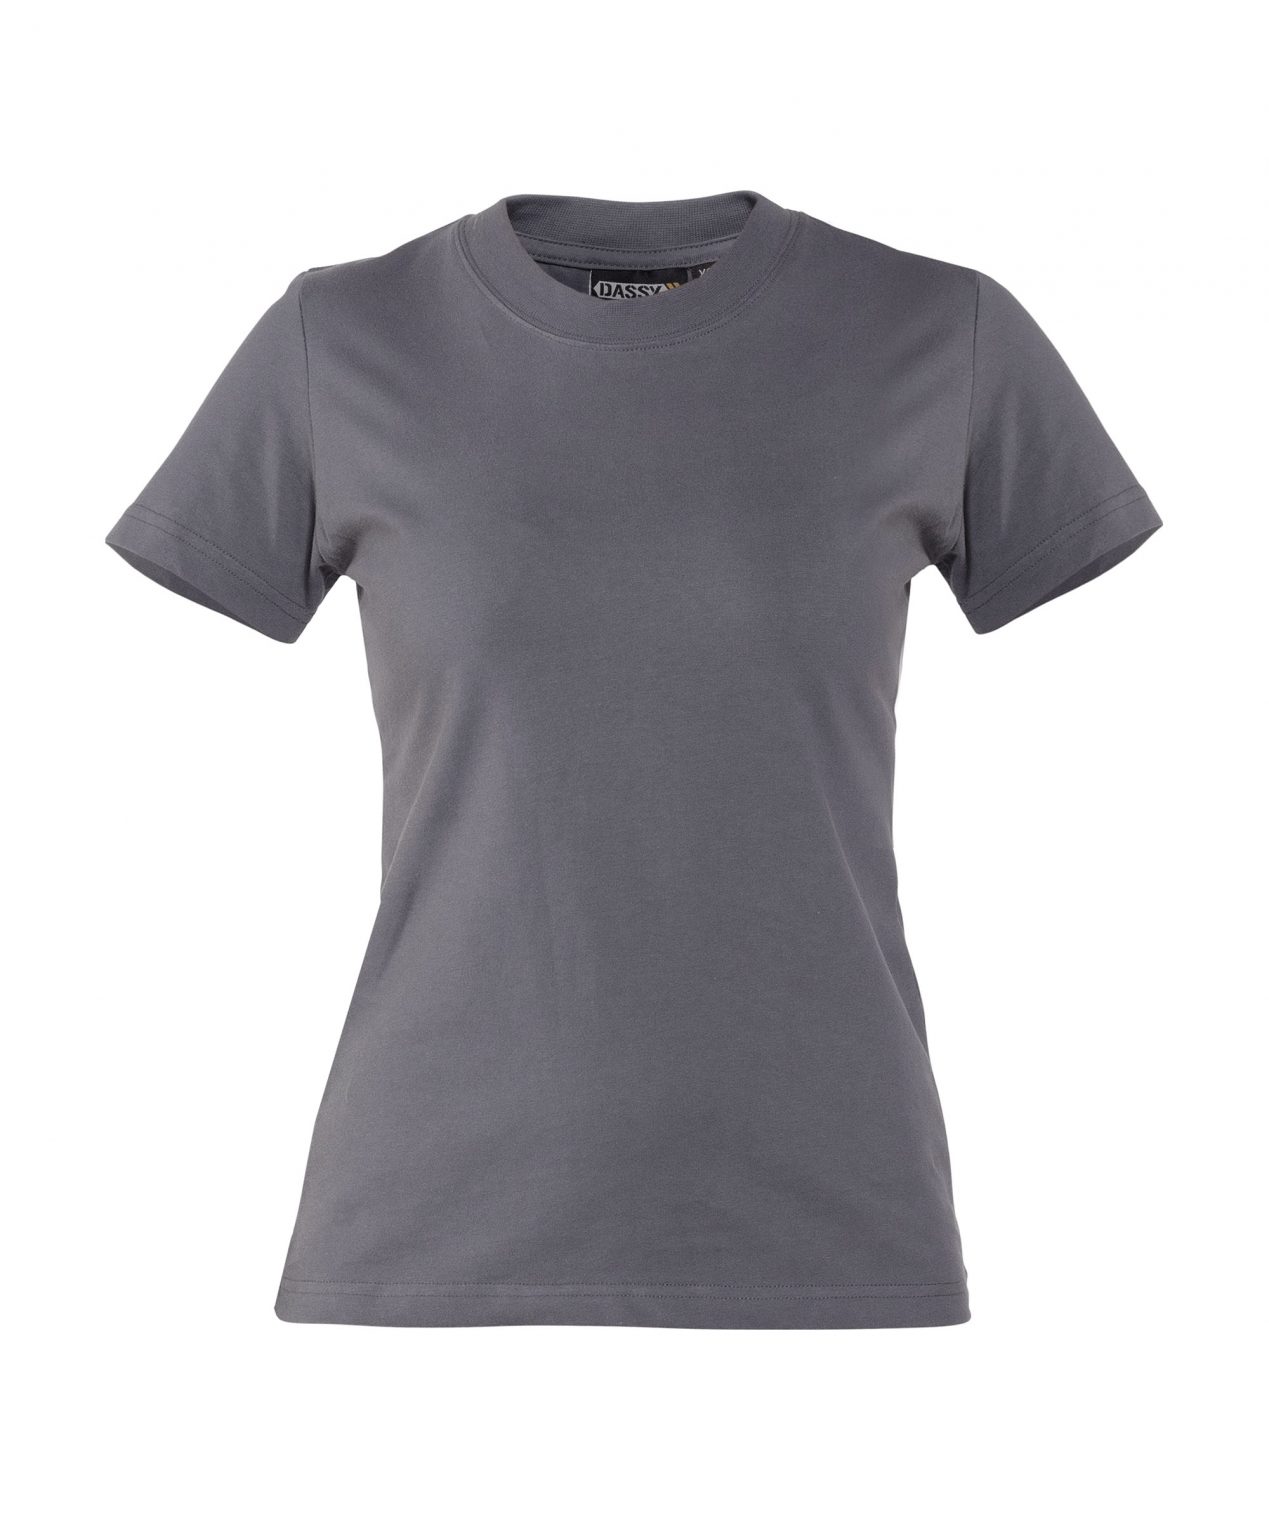 oscar women t shirt cement grey front